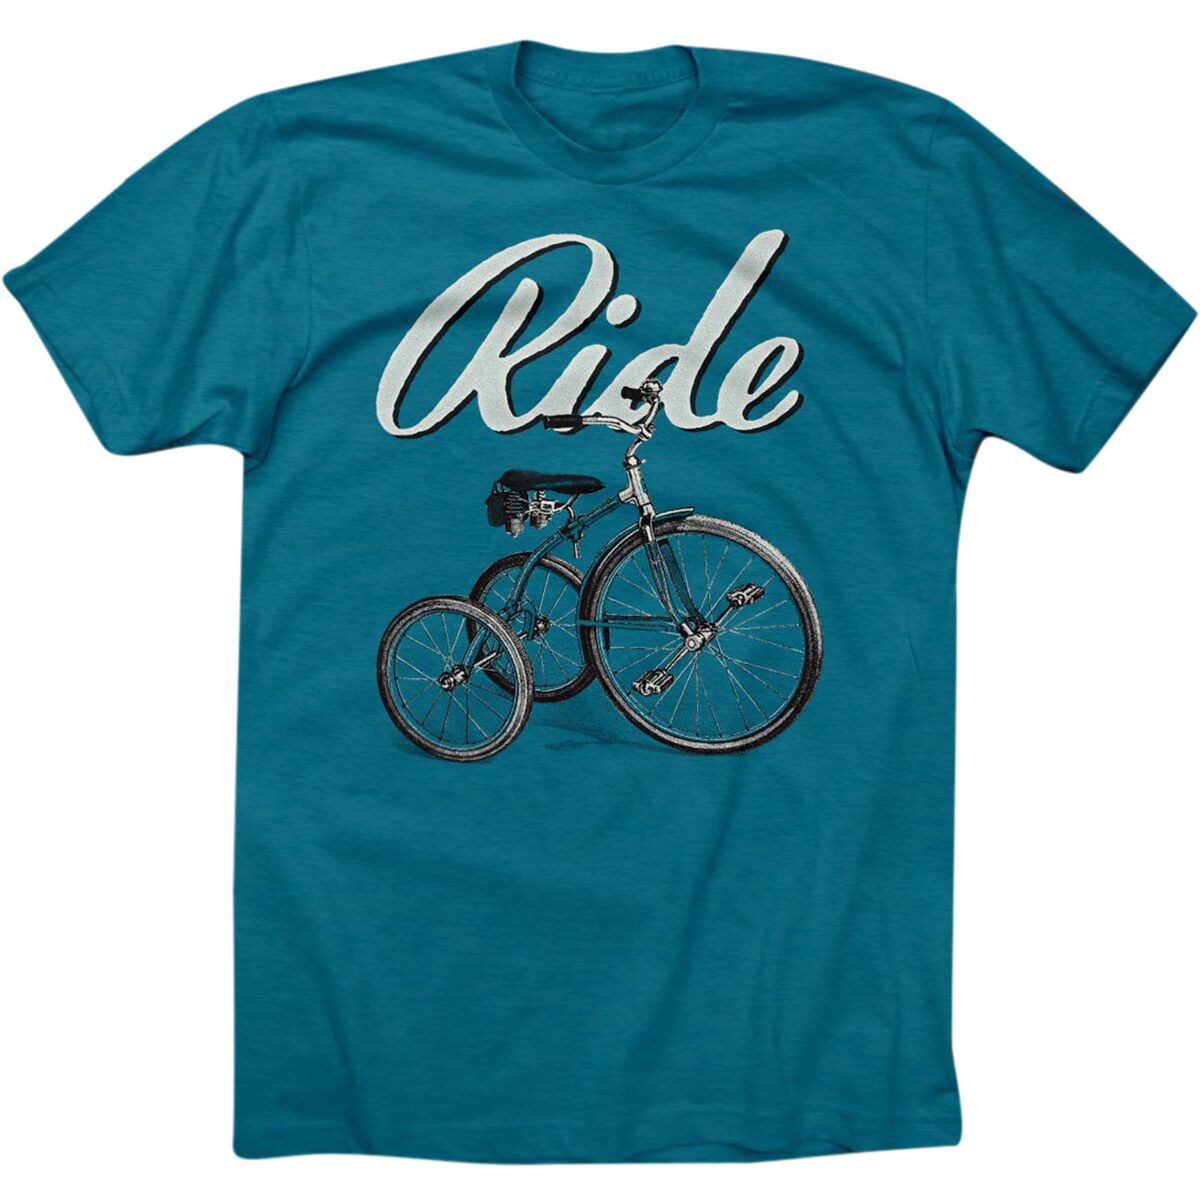 Twin Six Ride T-Shirt - Men's